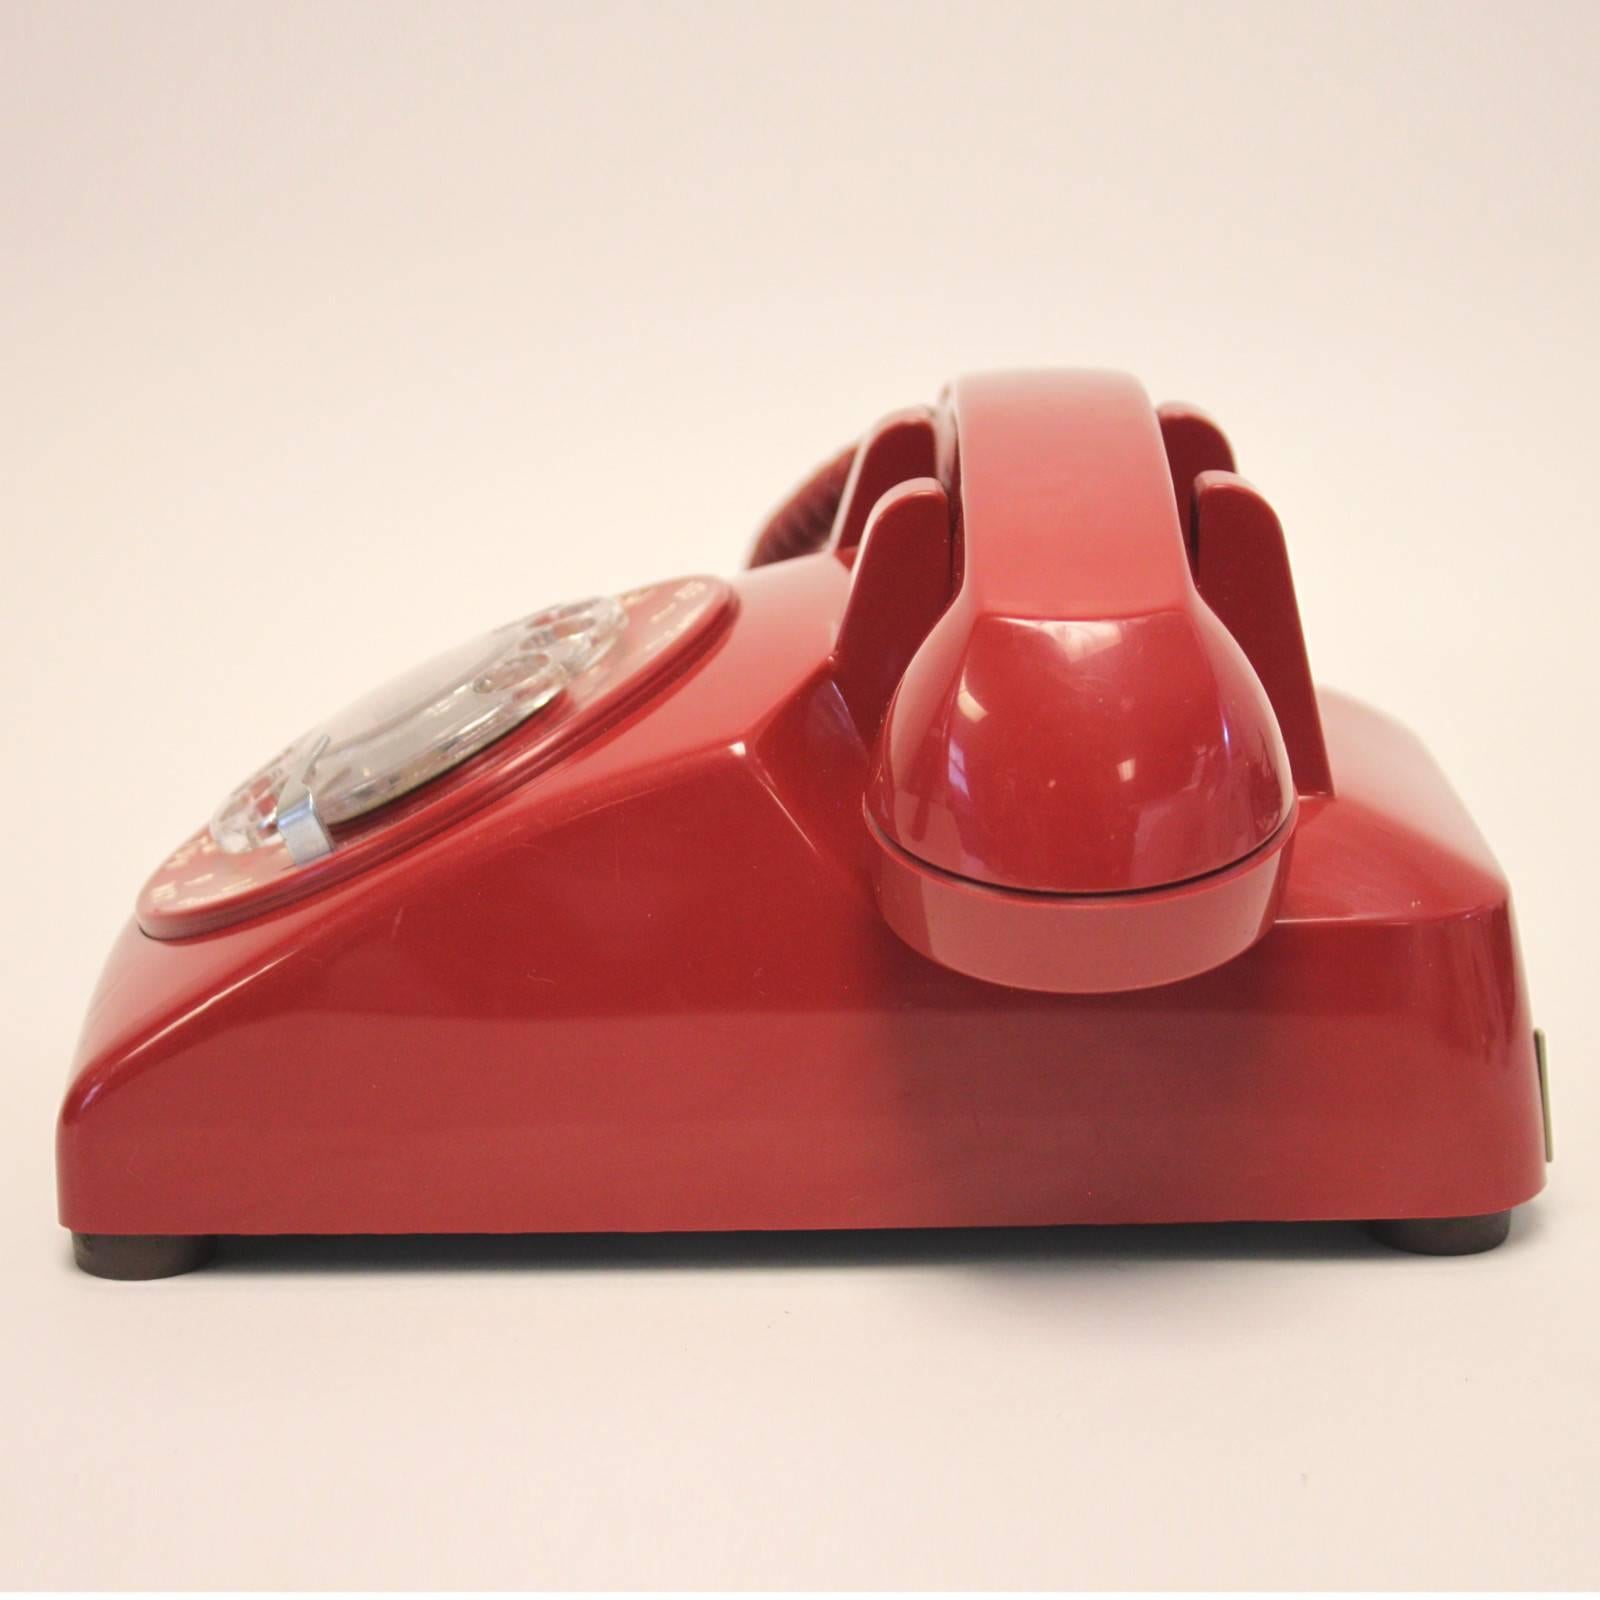 1970s phone